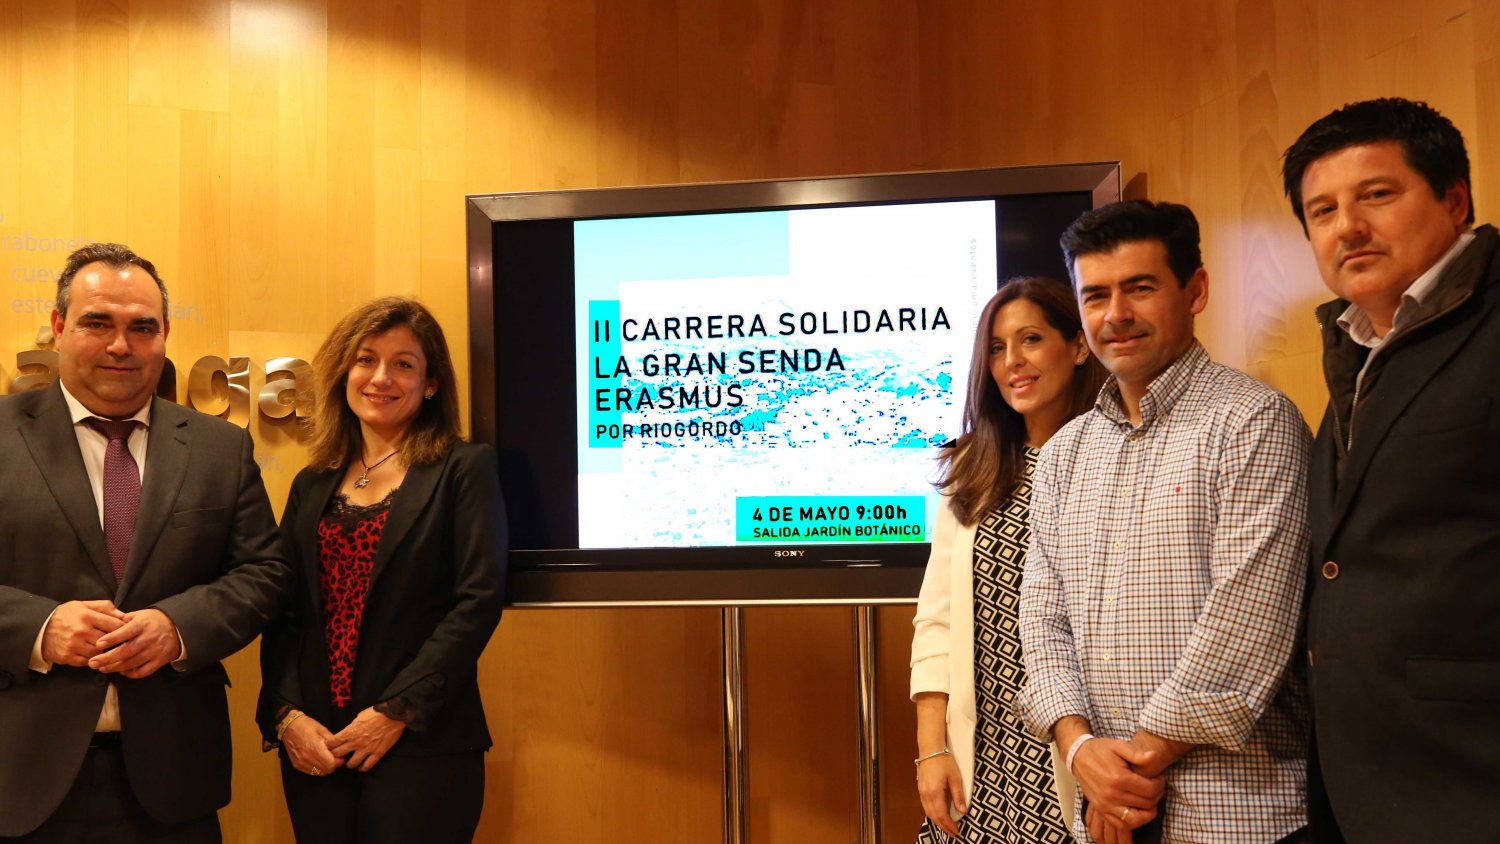 Estudiantes locales e internacionales de la UMA participarán en la II Carrera solidaria La Gran Senda Erasmus en Riogordo